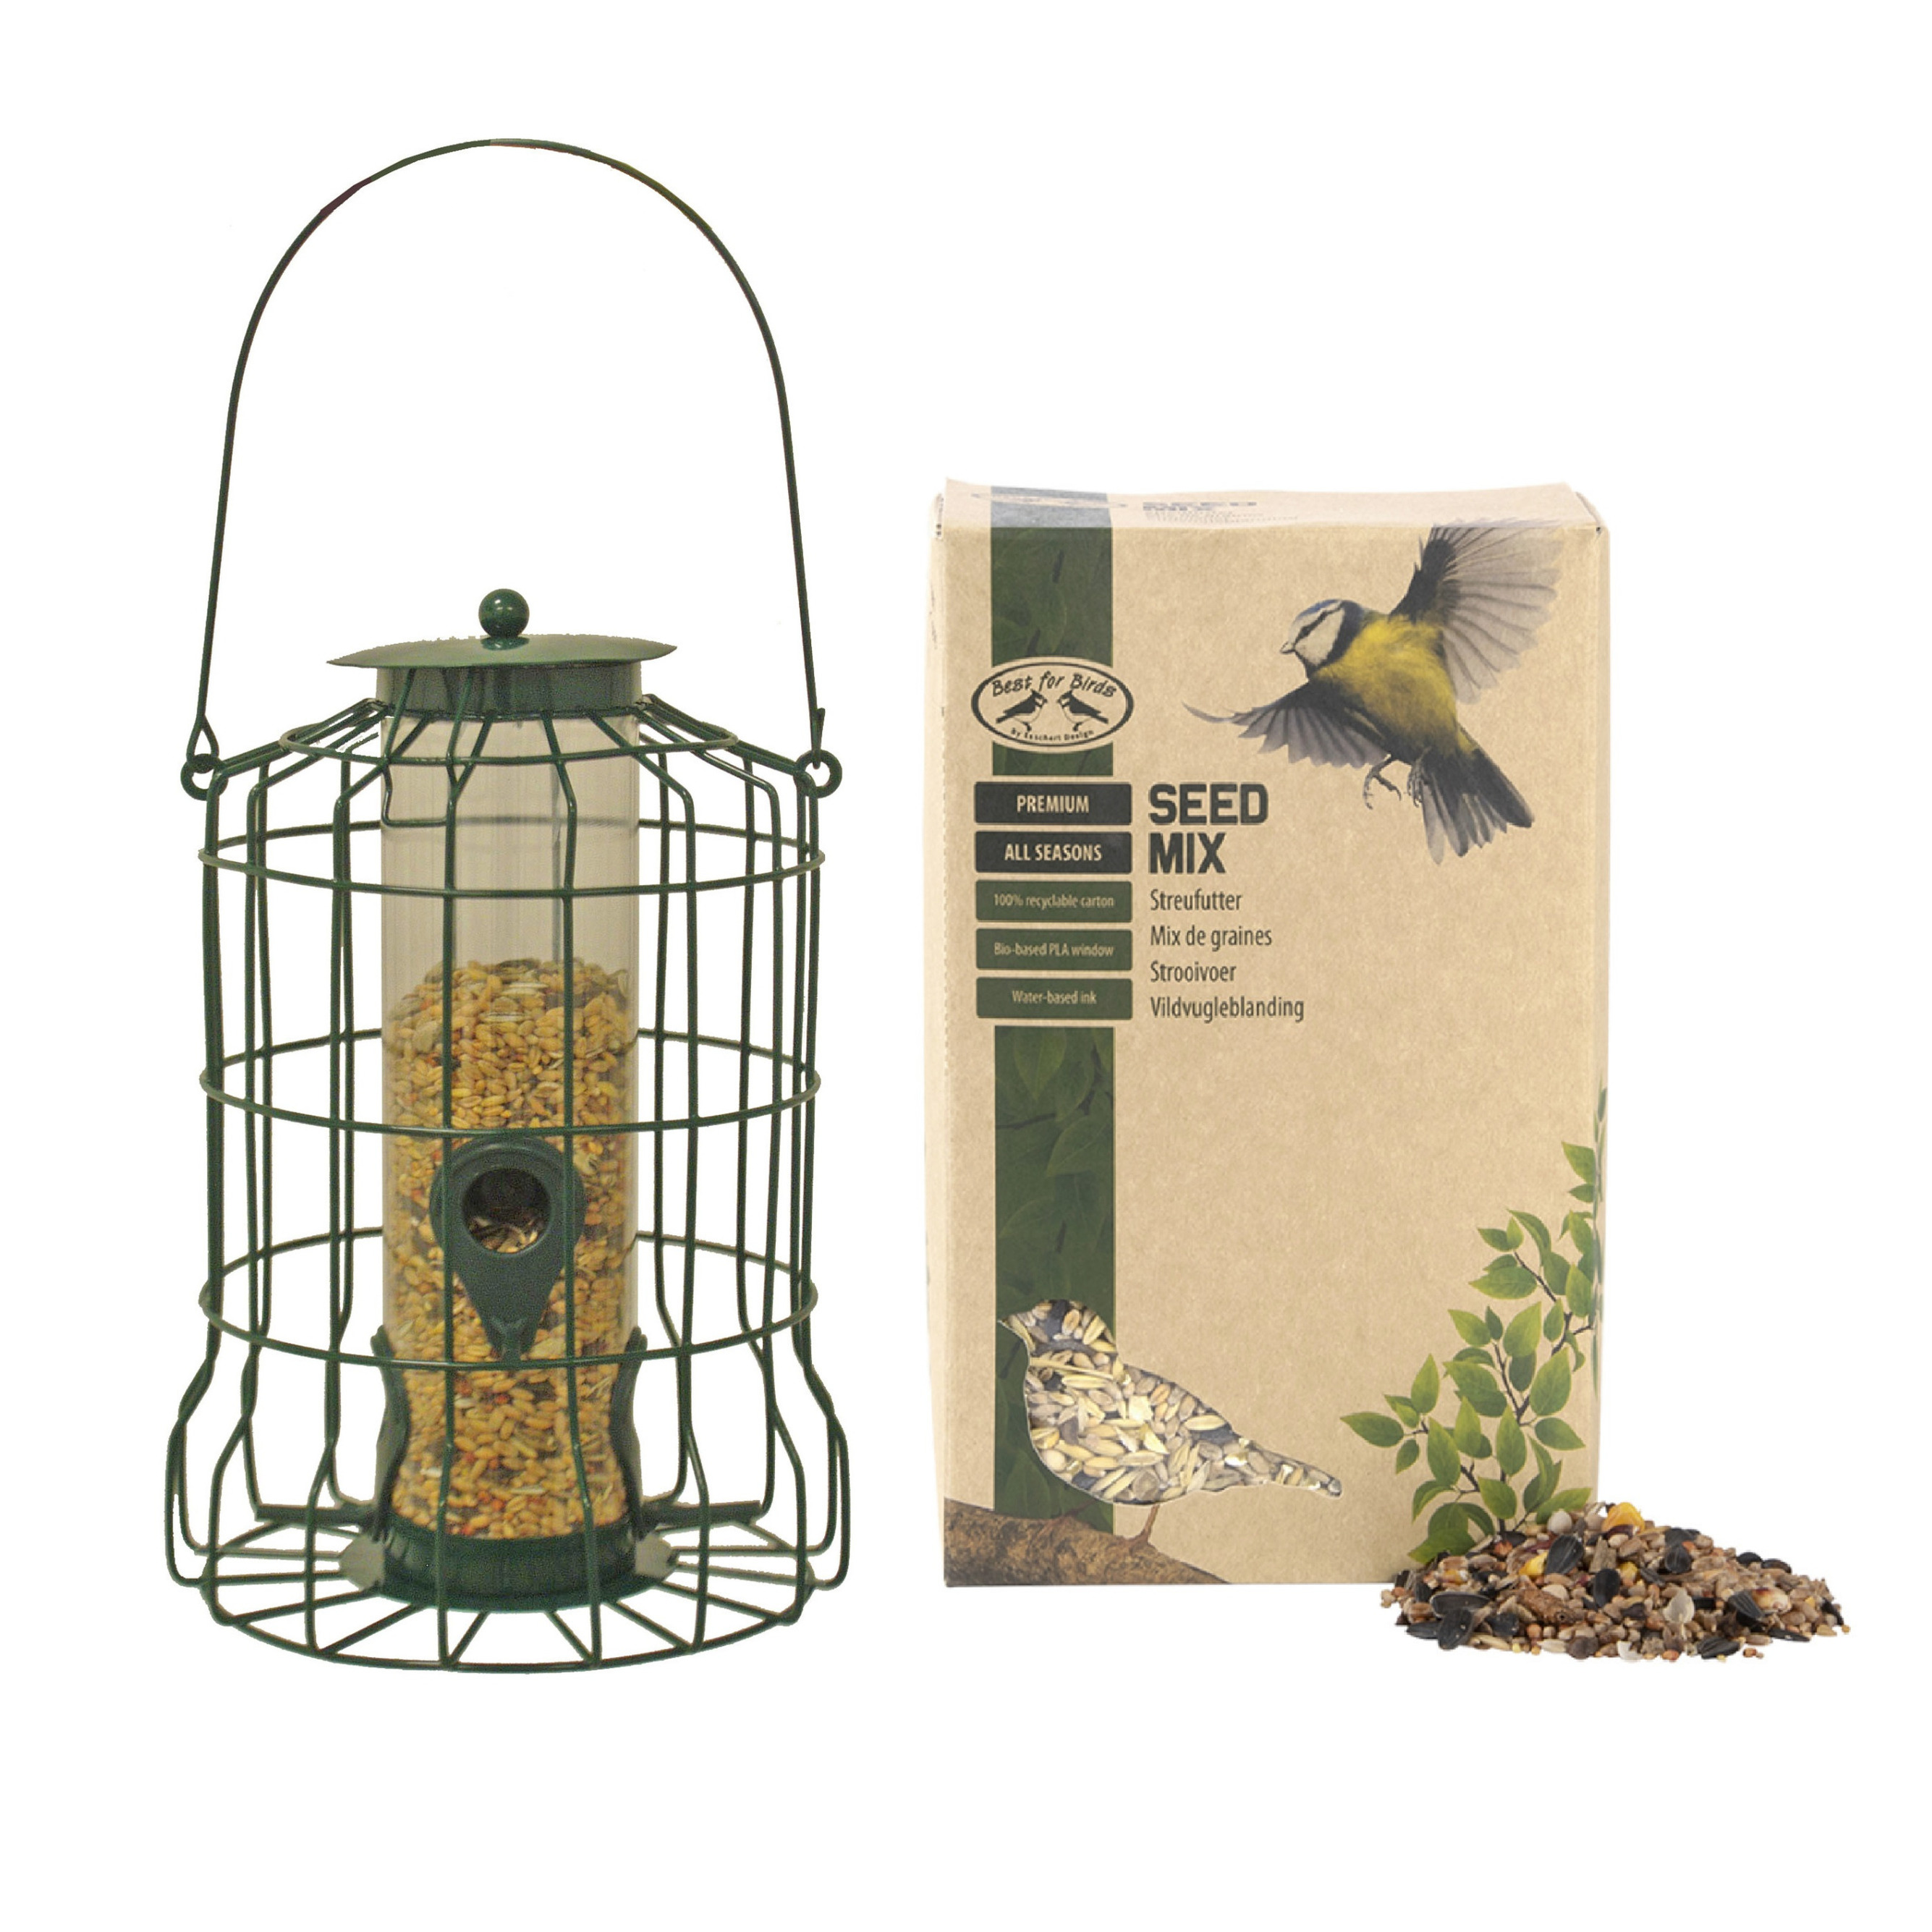 Vogel voedersilo voor kleine vogels metaal groen 36 cm inclusief vogelvoer - Vogel voederstation - Vogelvoederhuisje